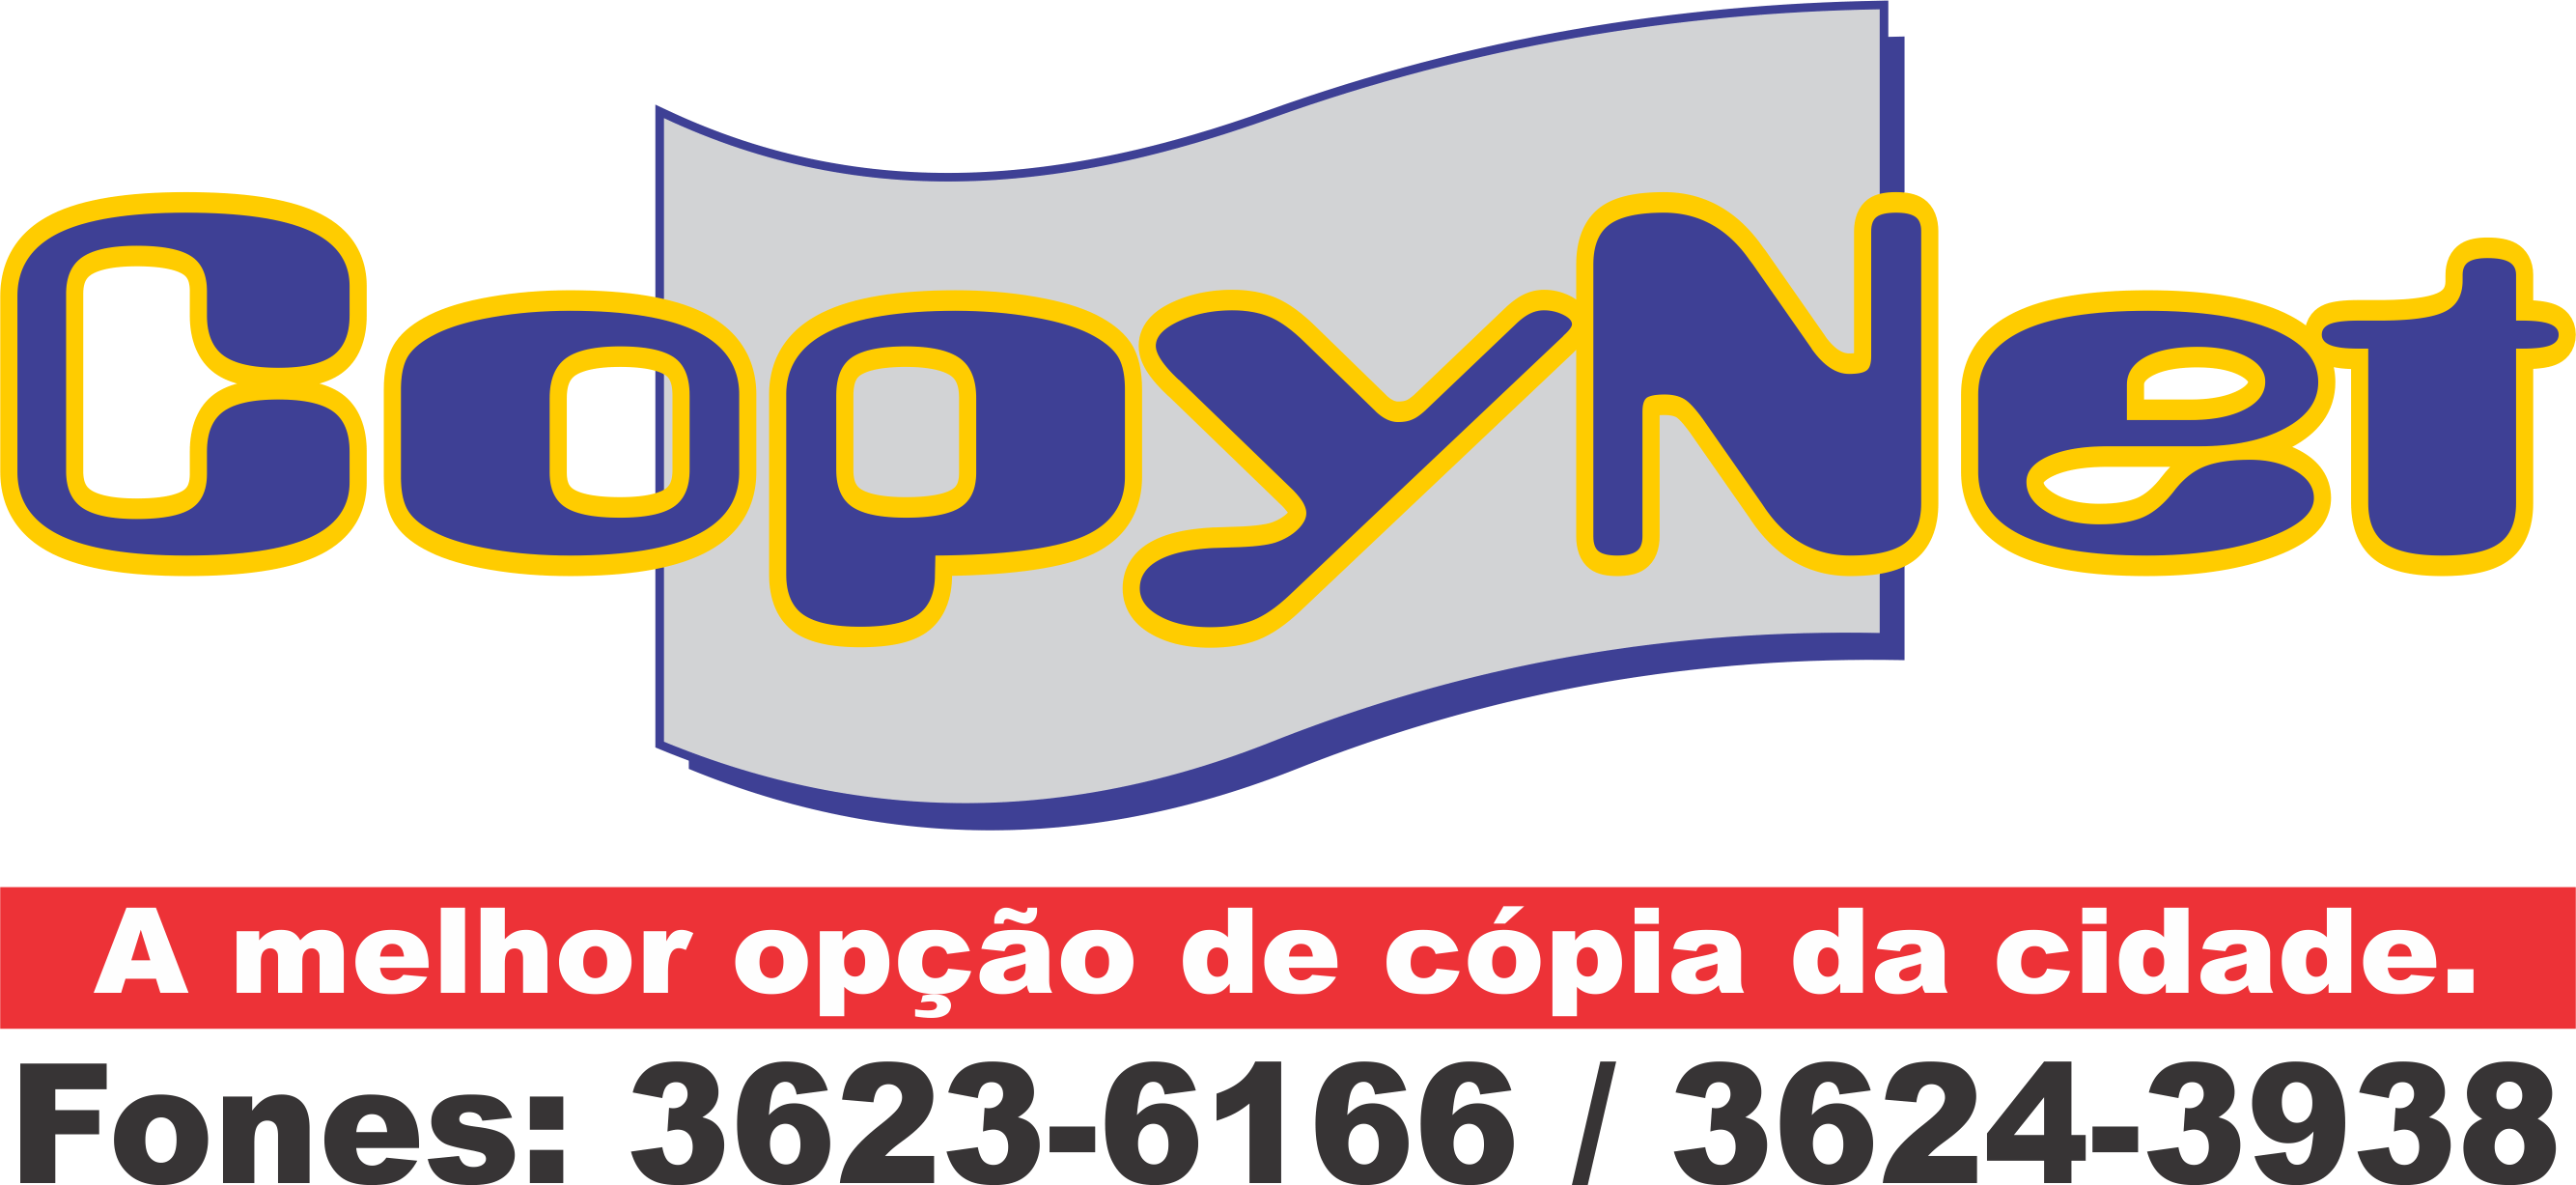 COPYNET - Boa Vista, RR